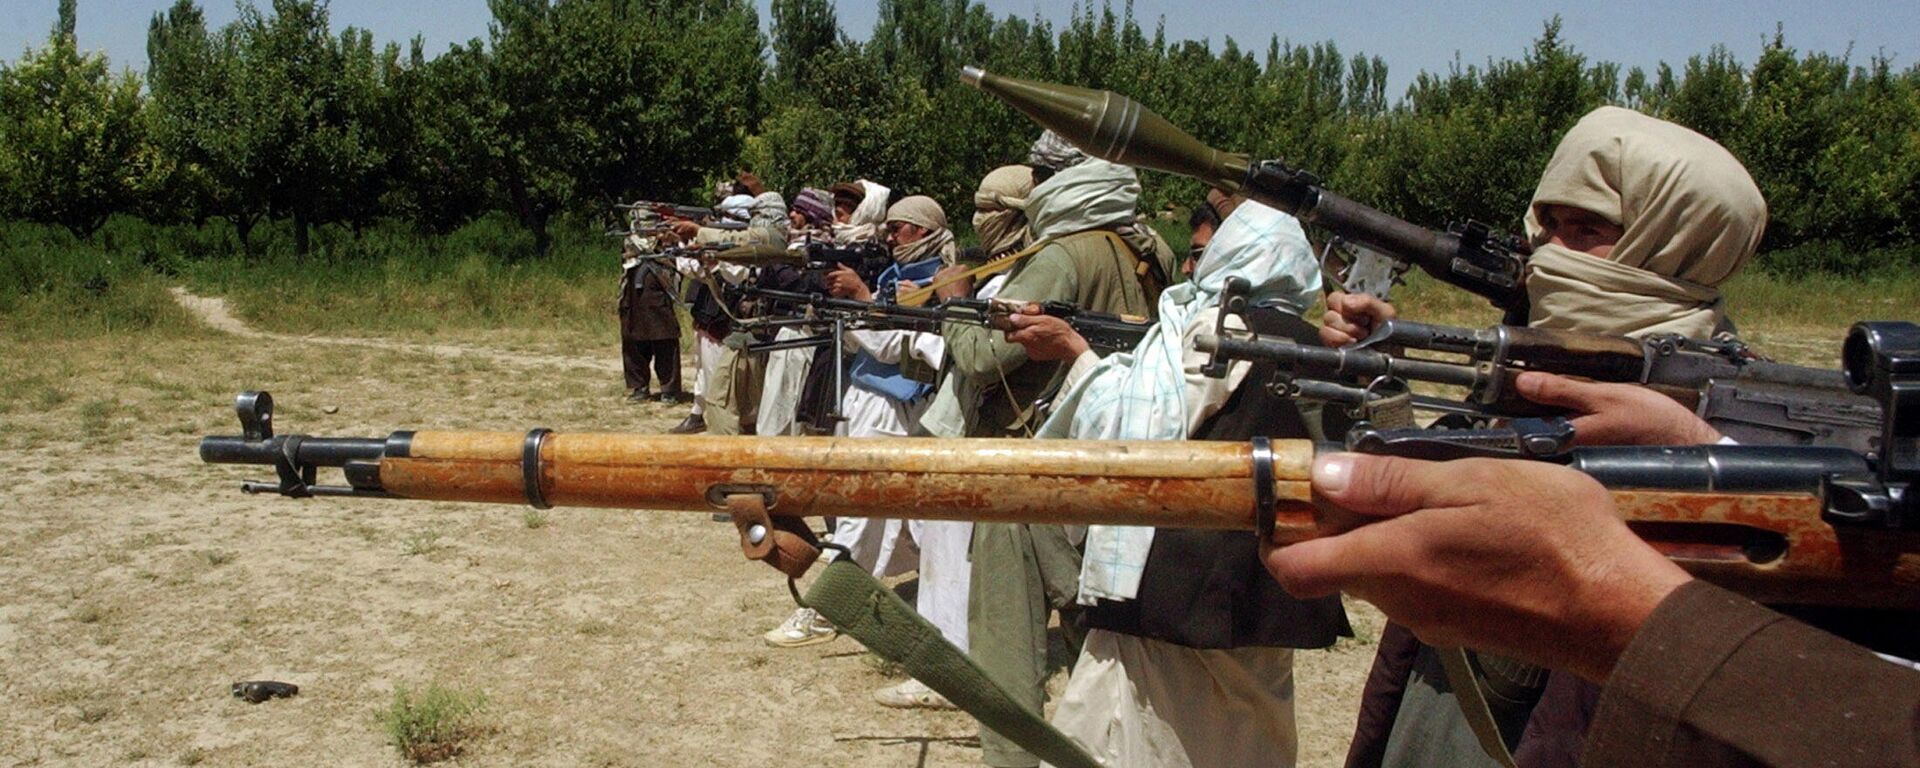 Los talibanes en Afganistán - Sputnik Mundo, 1920, 22.08.2021